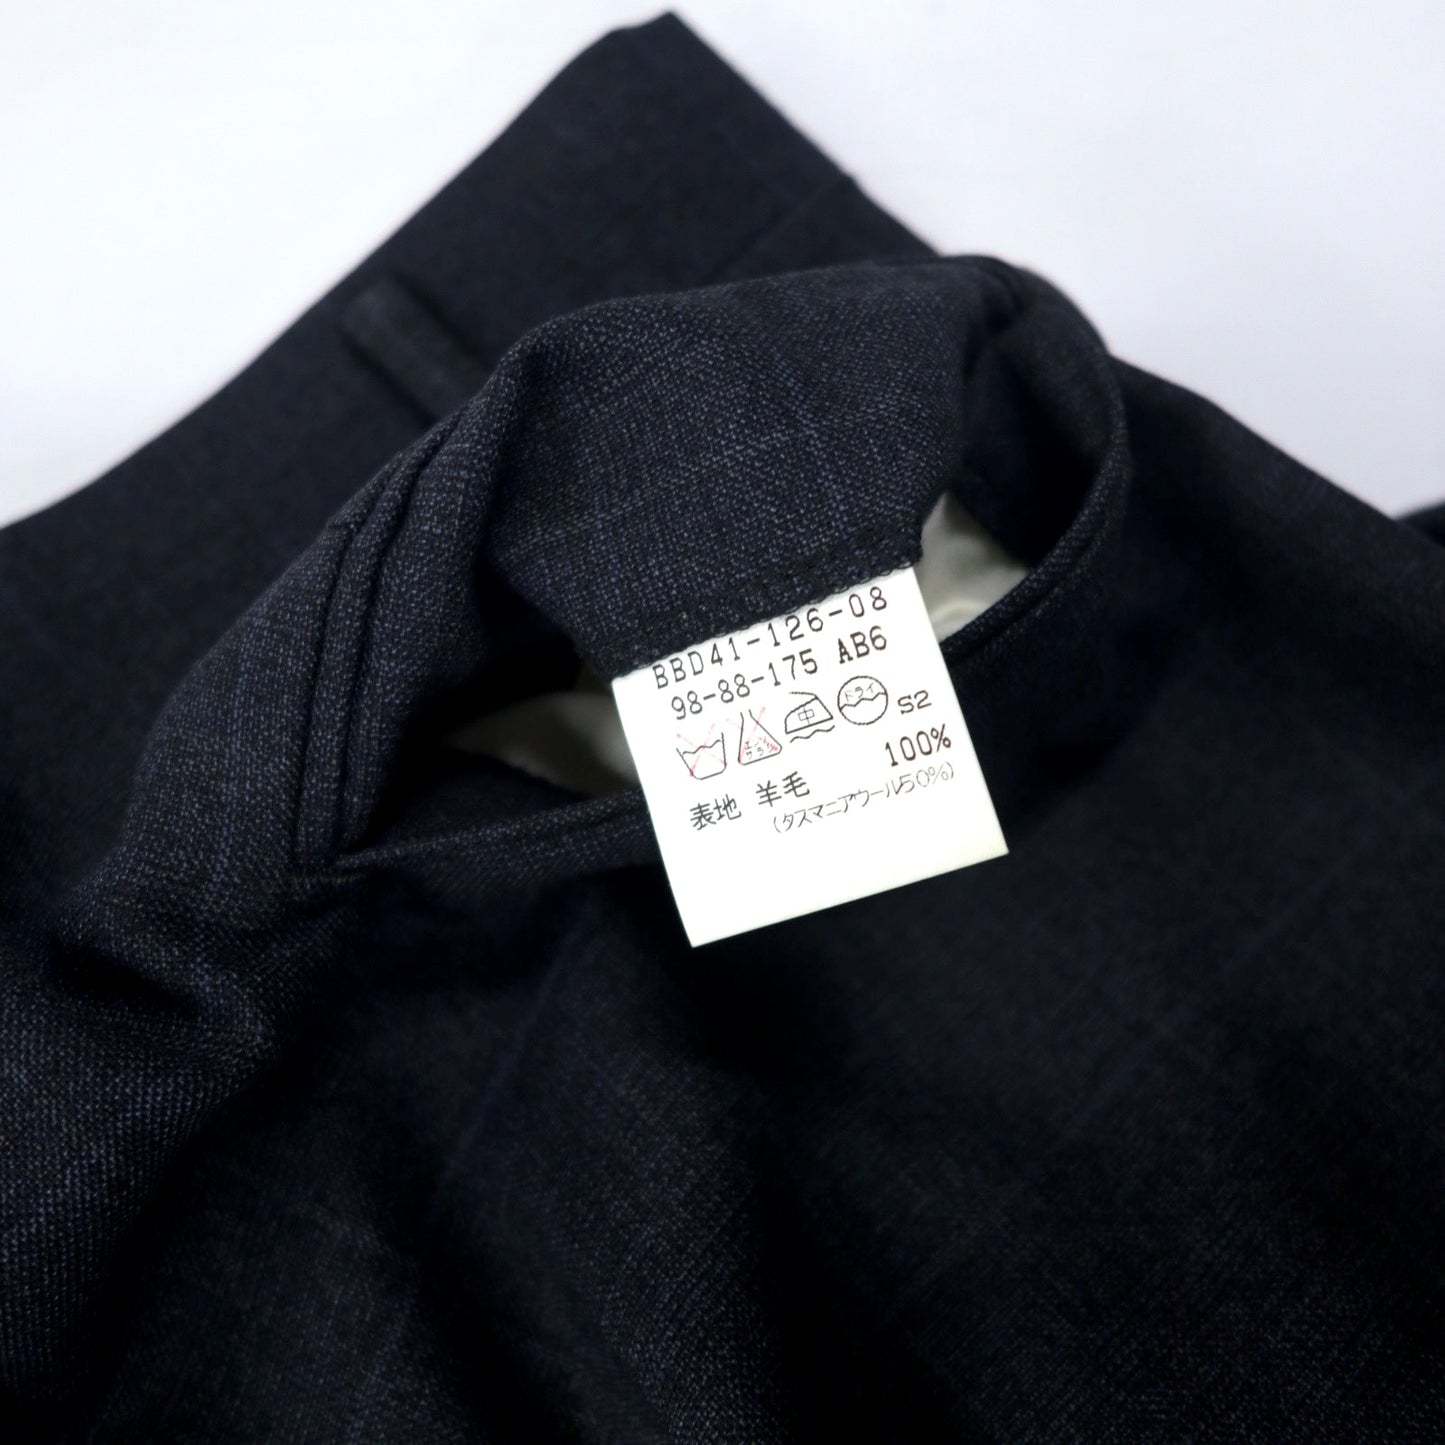 BURBERRY 2B スーツ セットアップ 98-88-175 AB6 グレー チェック ウール 羊毛 日本製